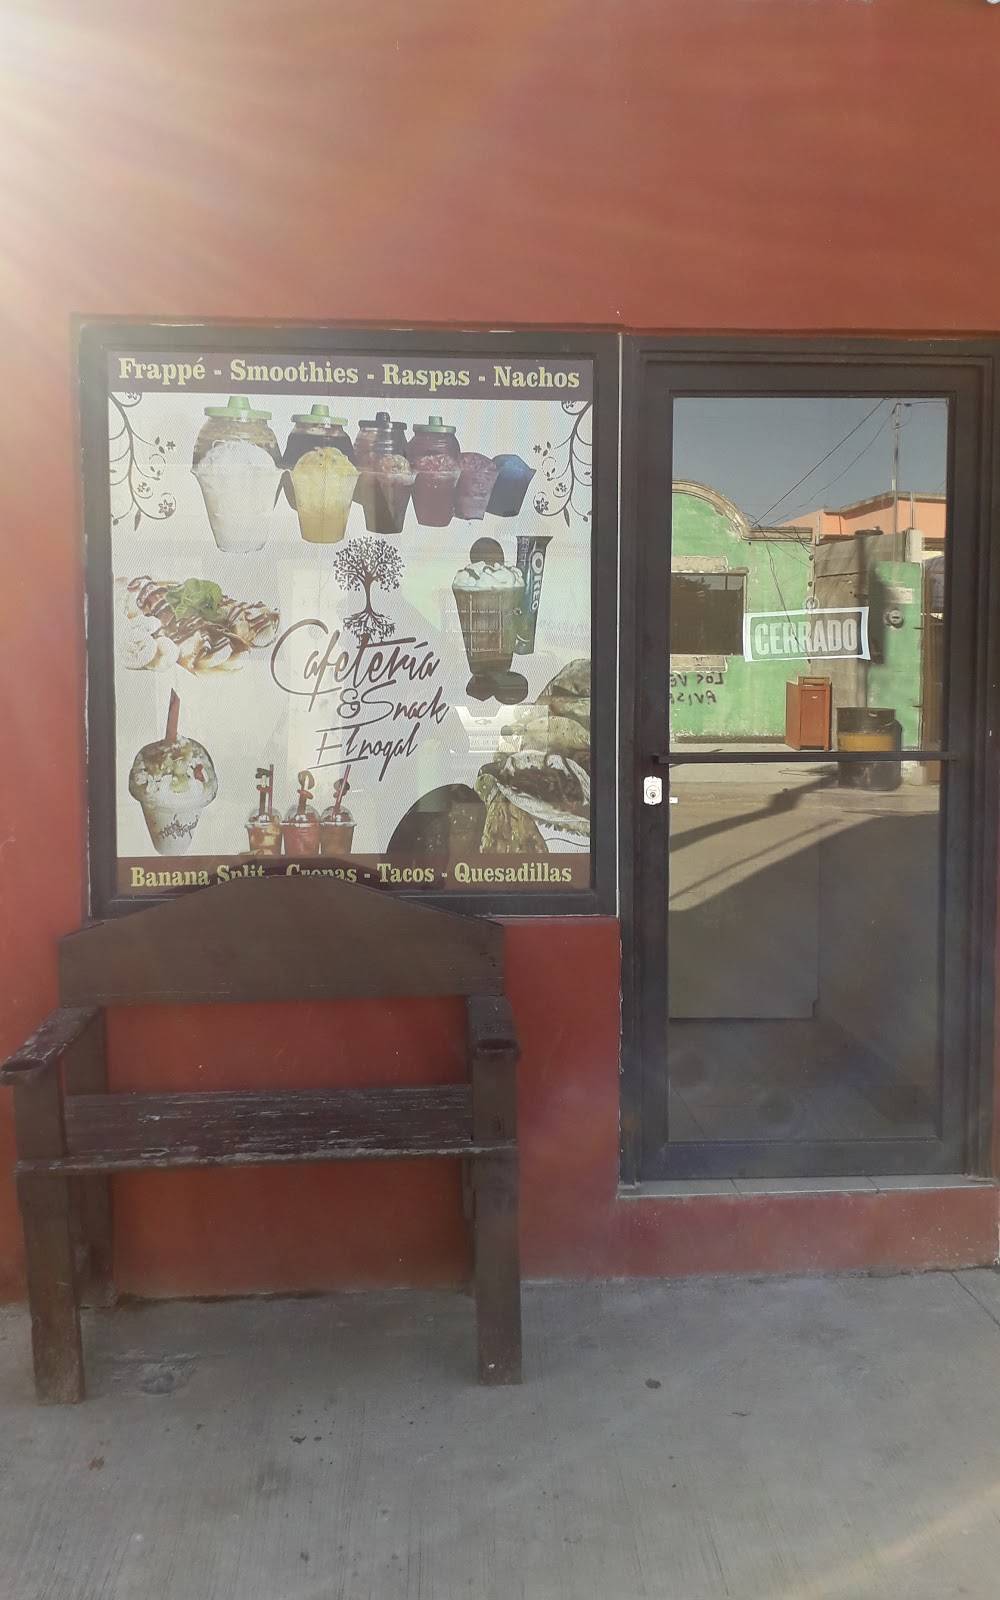 Cafetería y Snack El nogal | Calle Bambú 5652, El Nogal, 88290 Nuevo Laredo, Tamps., Mexico | Phone: 867 254 2114